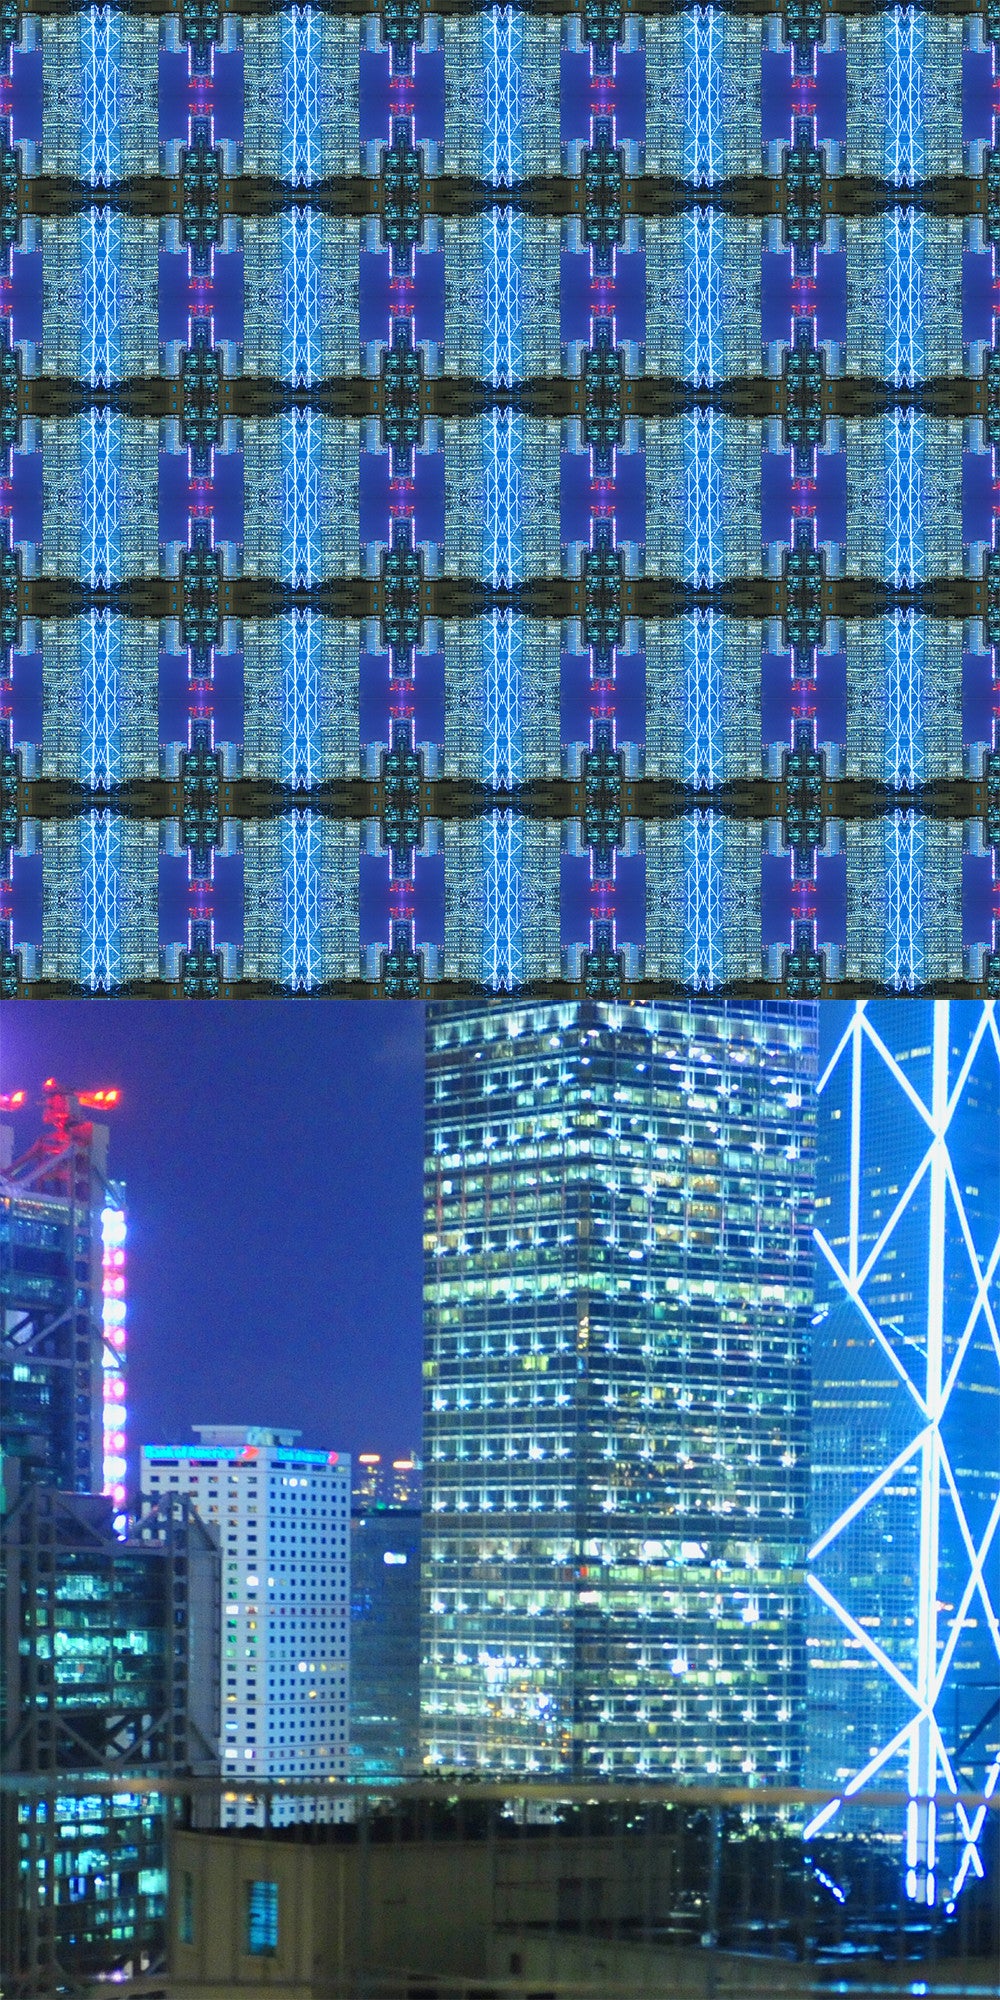 HKS08 - City lights